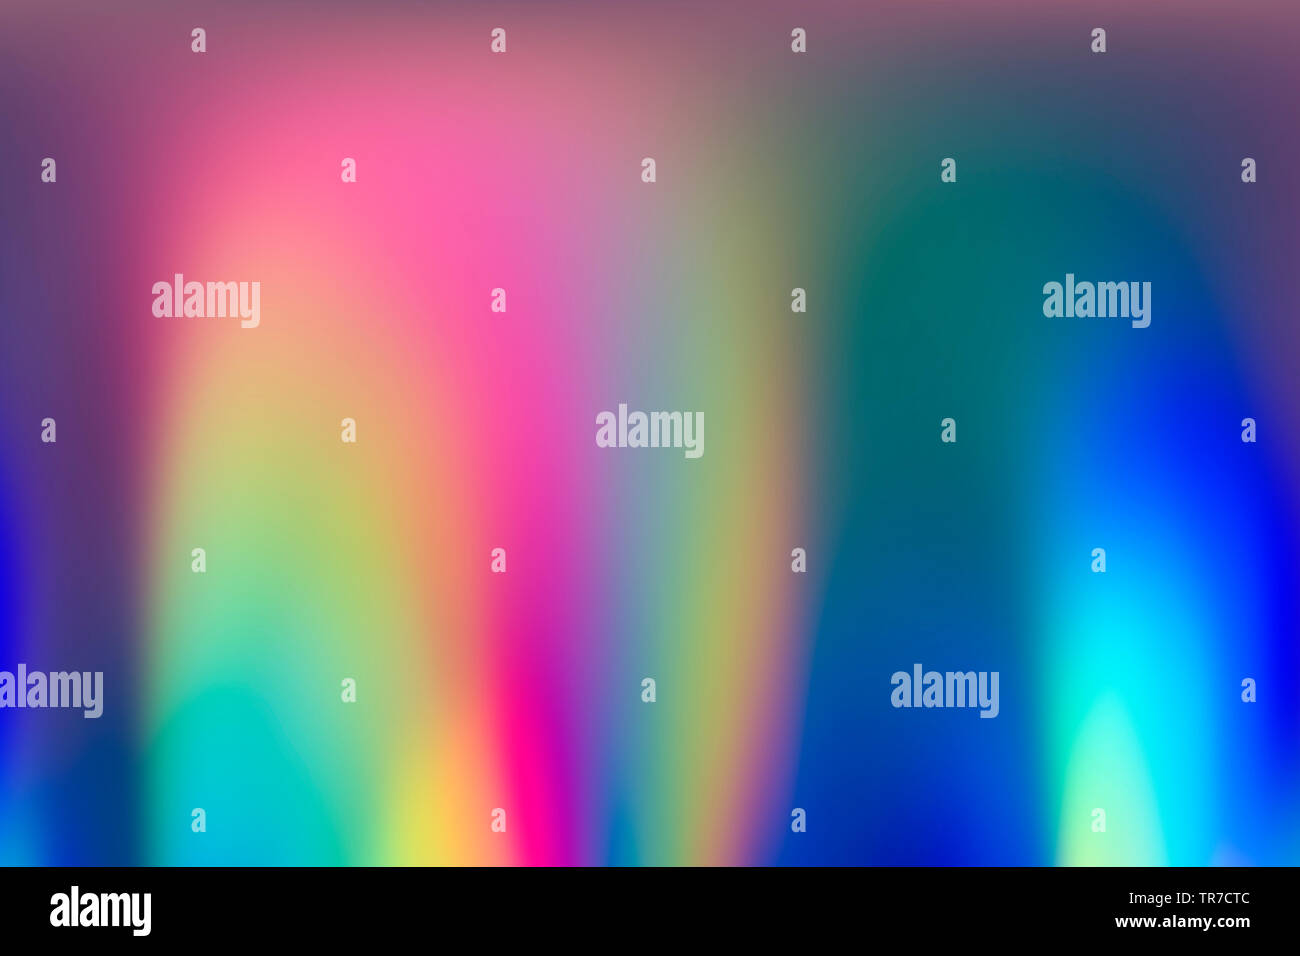 Spektrum abstrakt vaporwave holographische Hintergrund, trendigen bunten Kulisse in Pastelltönen Neon farbe. Für kreatives Design, Web & Print Stockfoto